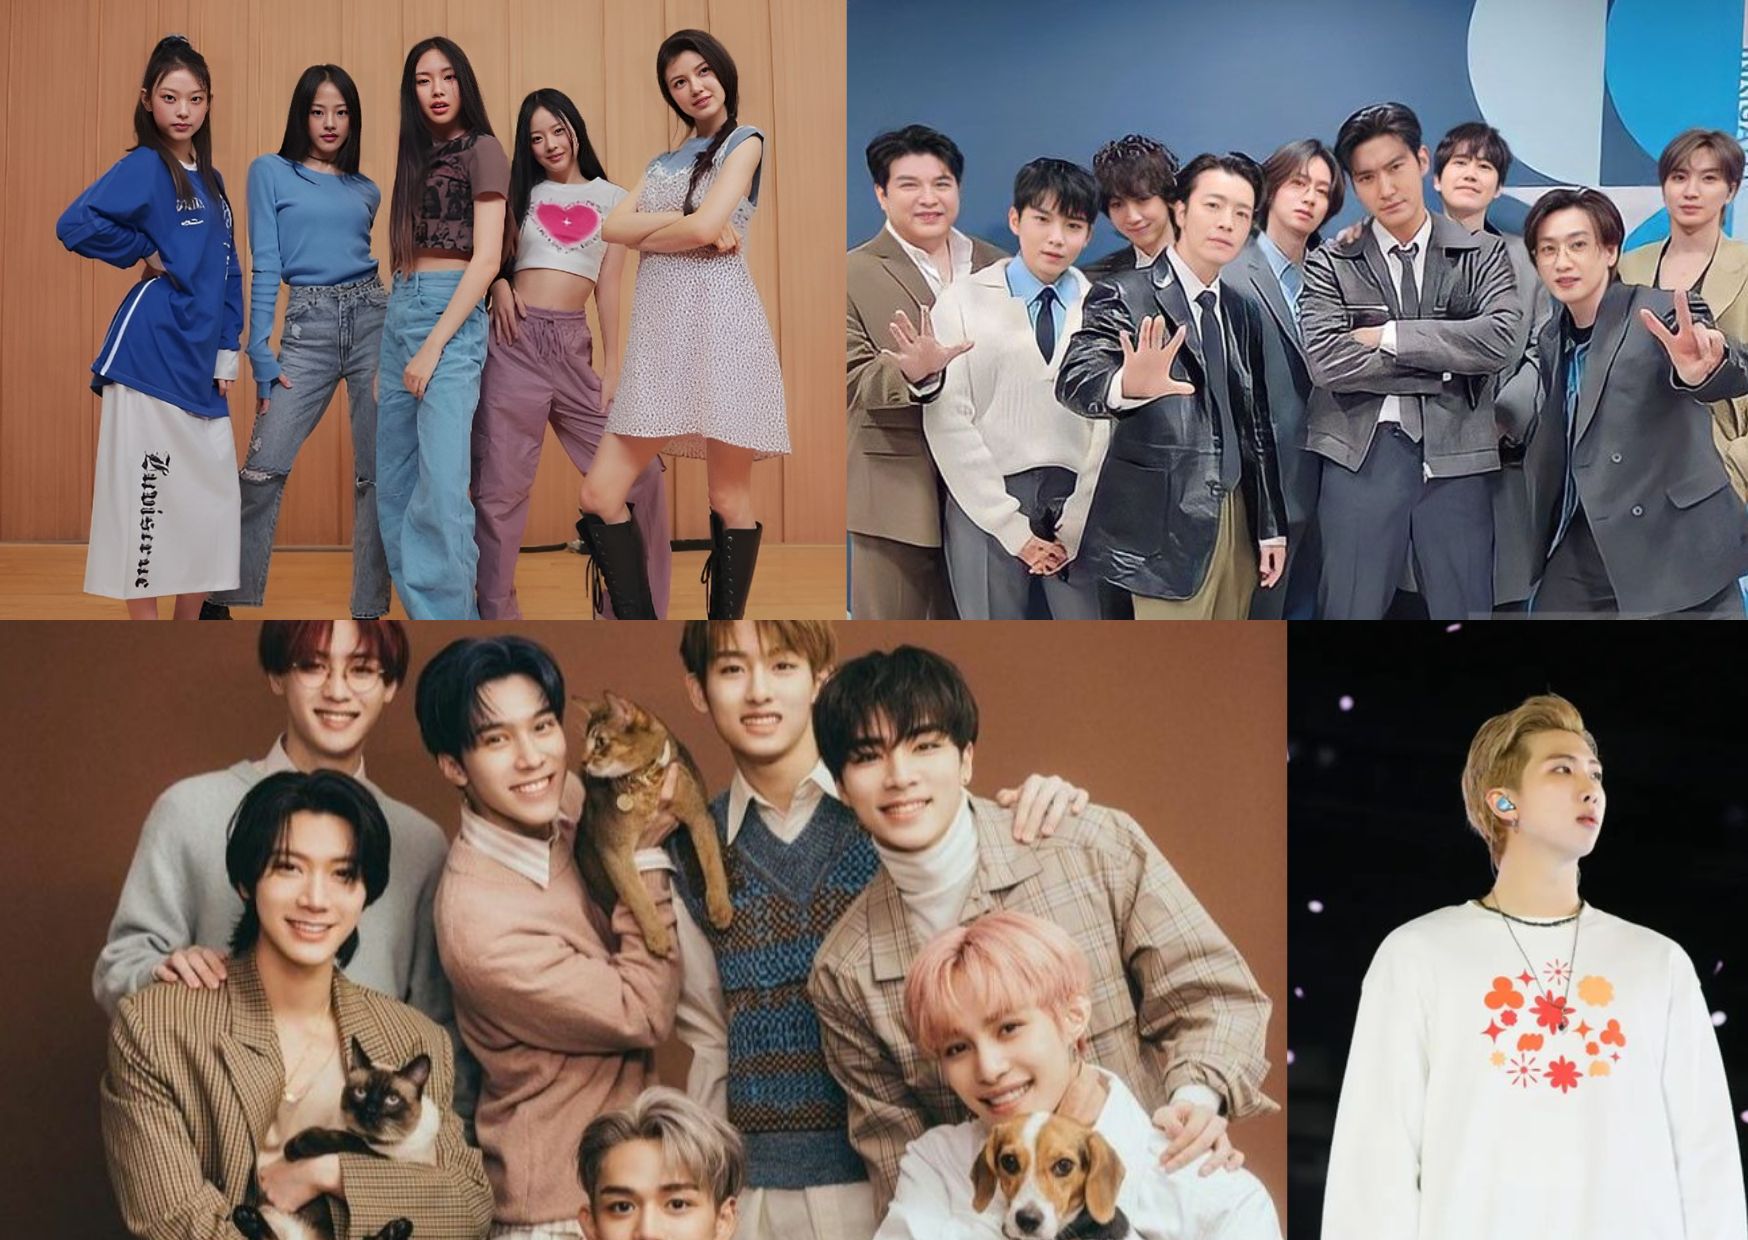 RM BTS, NewJeans, WayV, Super Junior, dan lainnya: Jadwal Comeback K-Pop Desember 2022